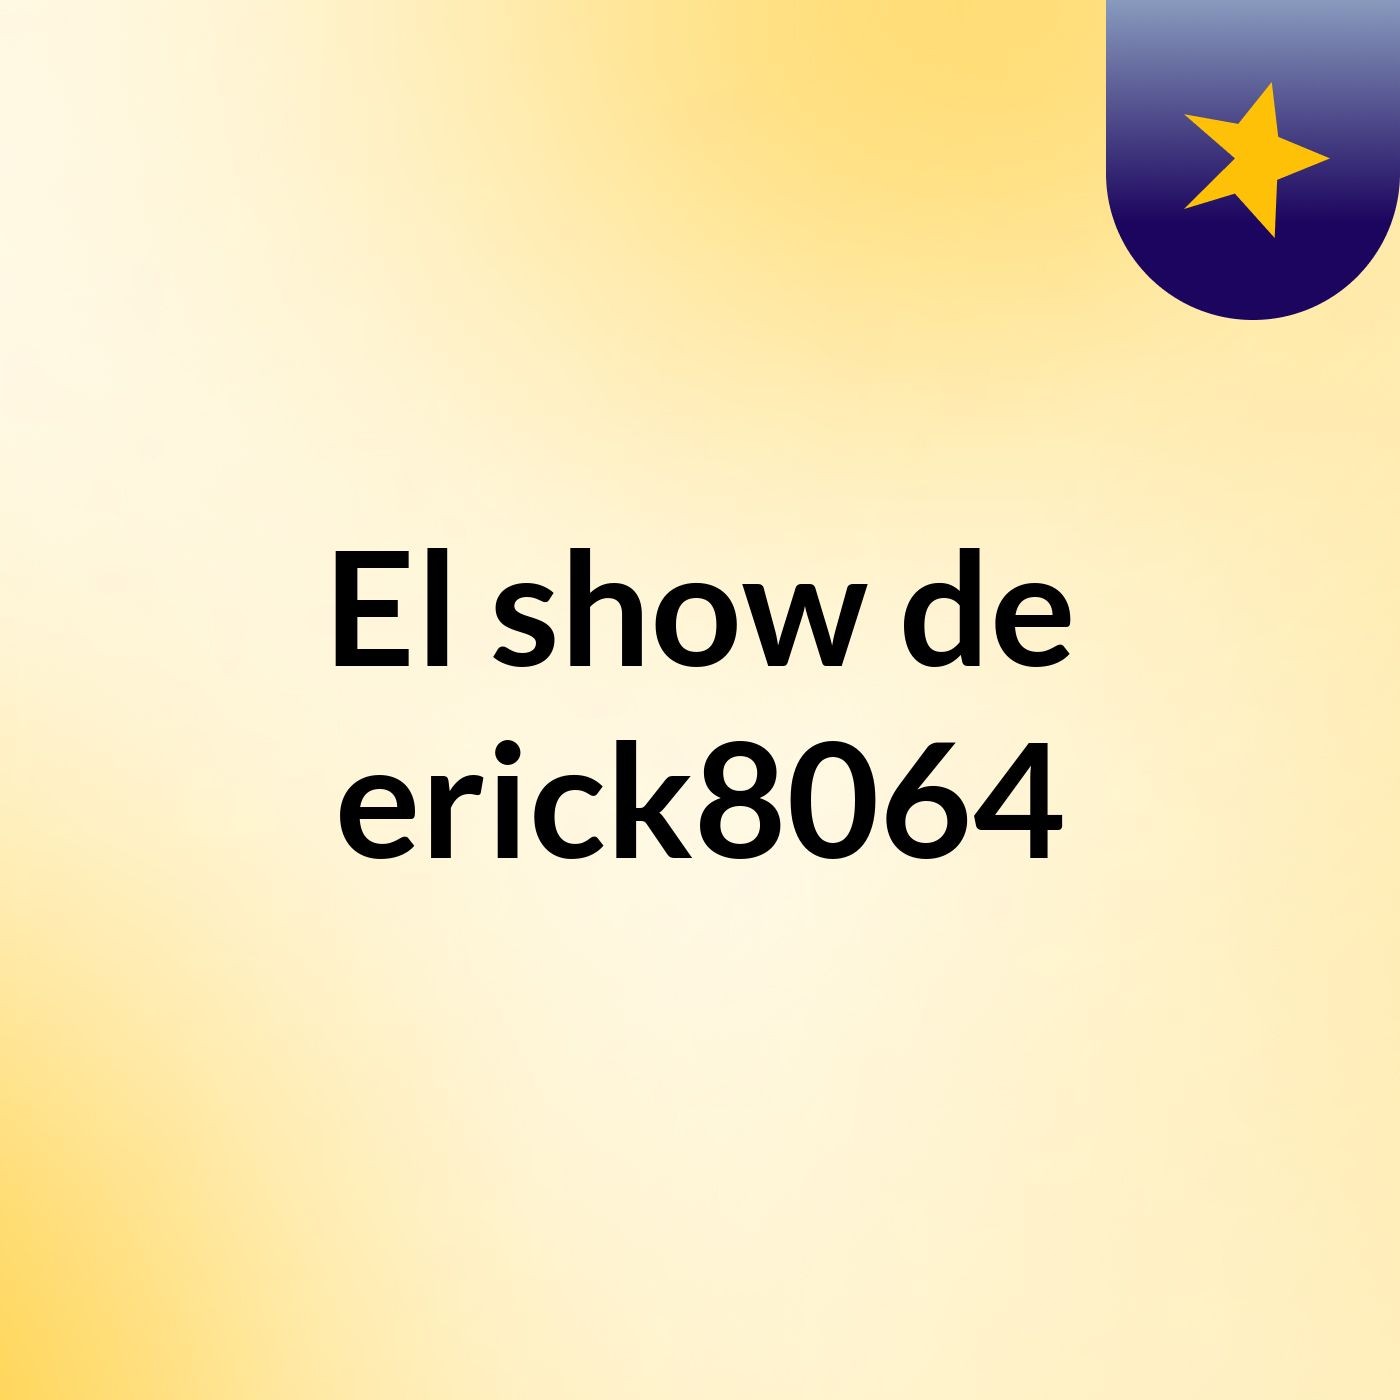 El show de erick8064